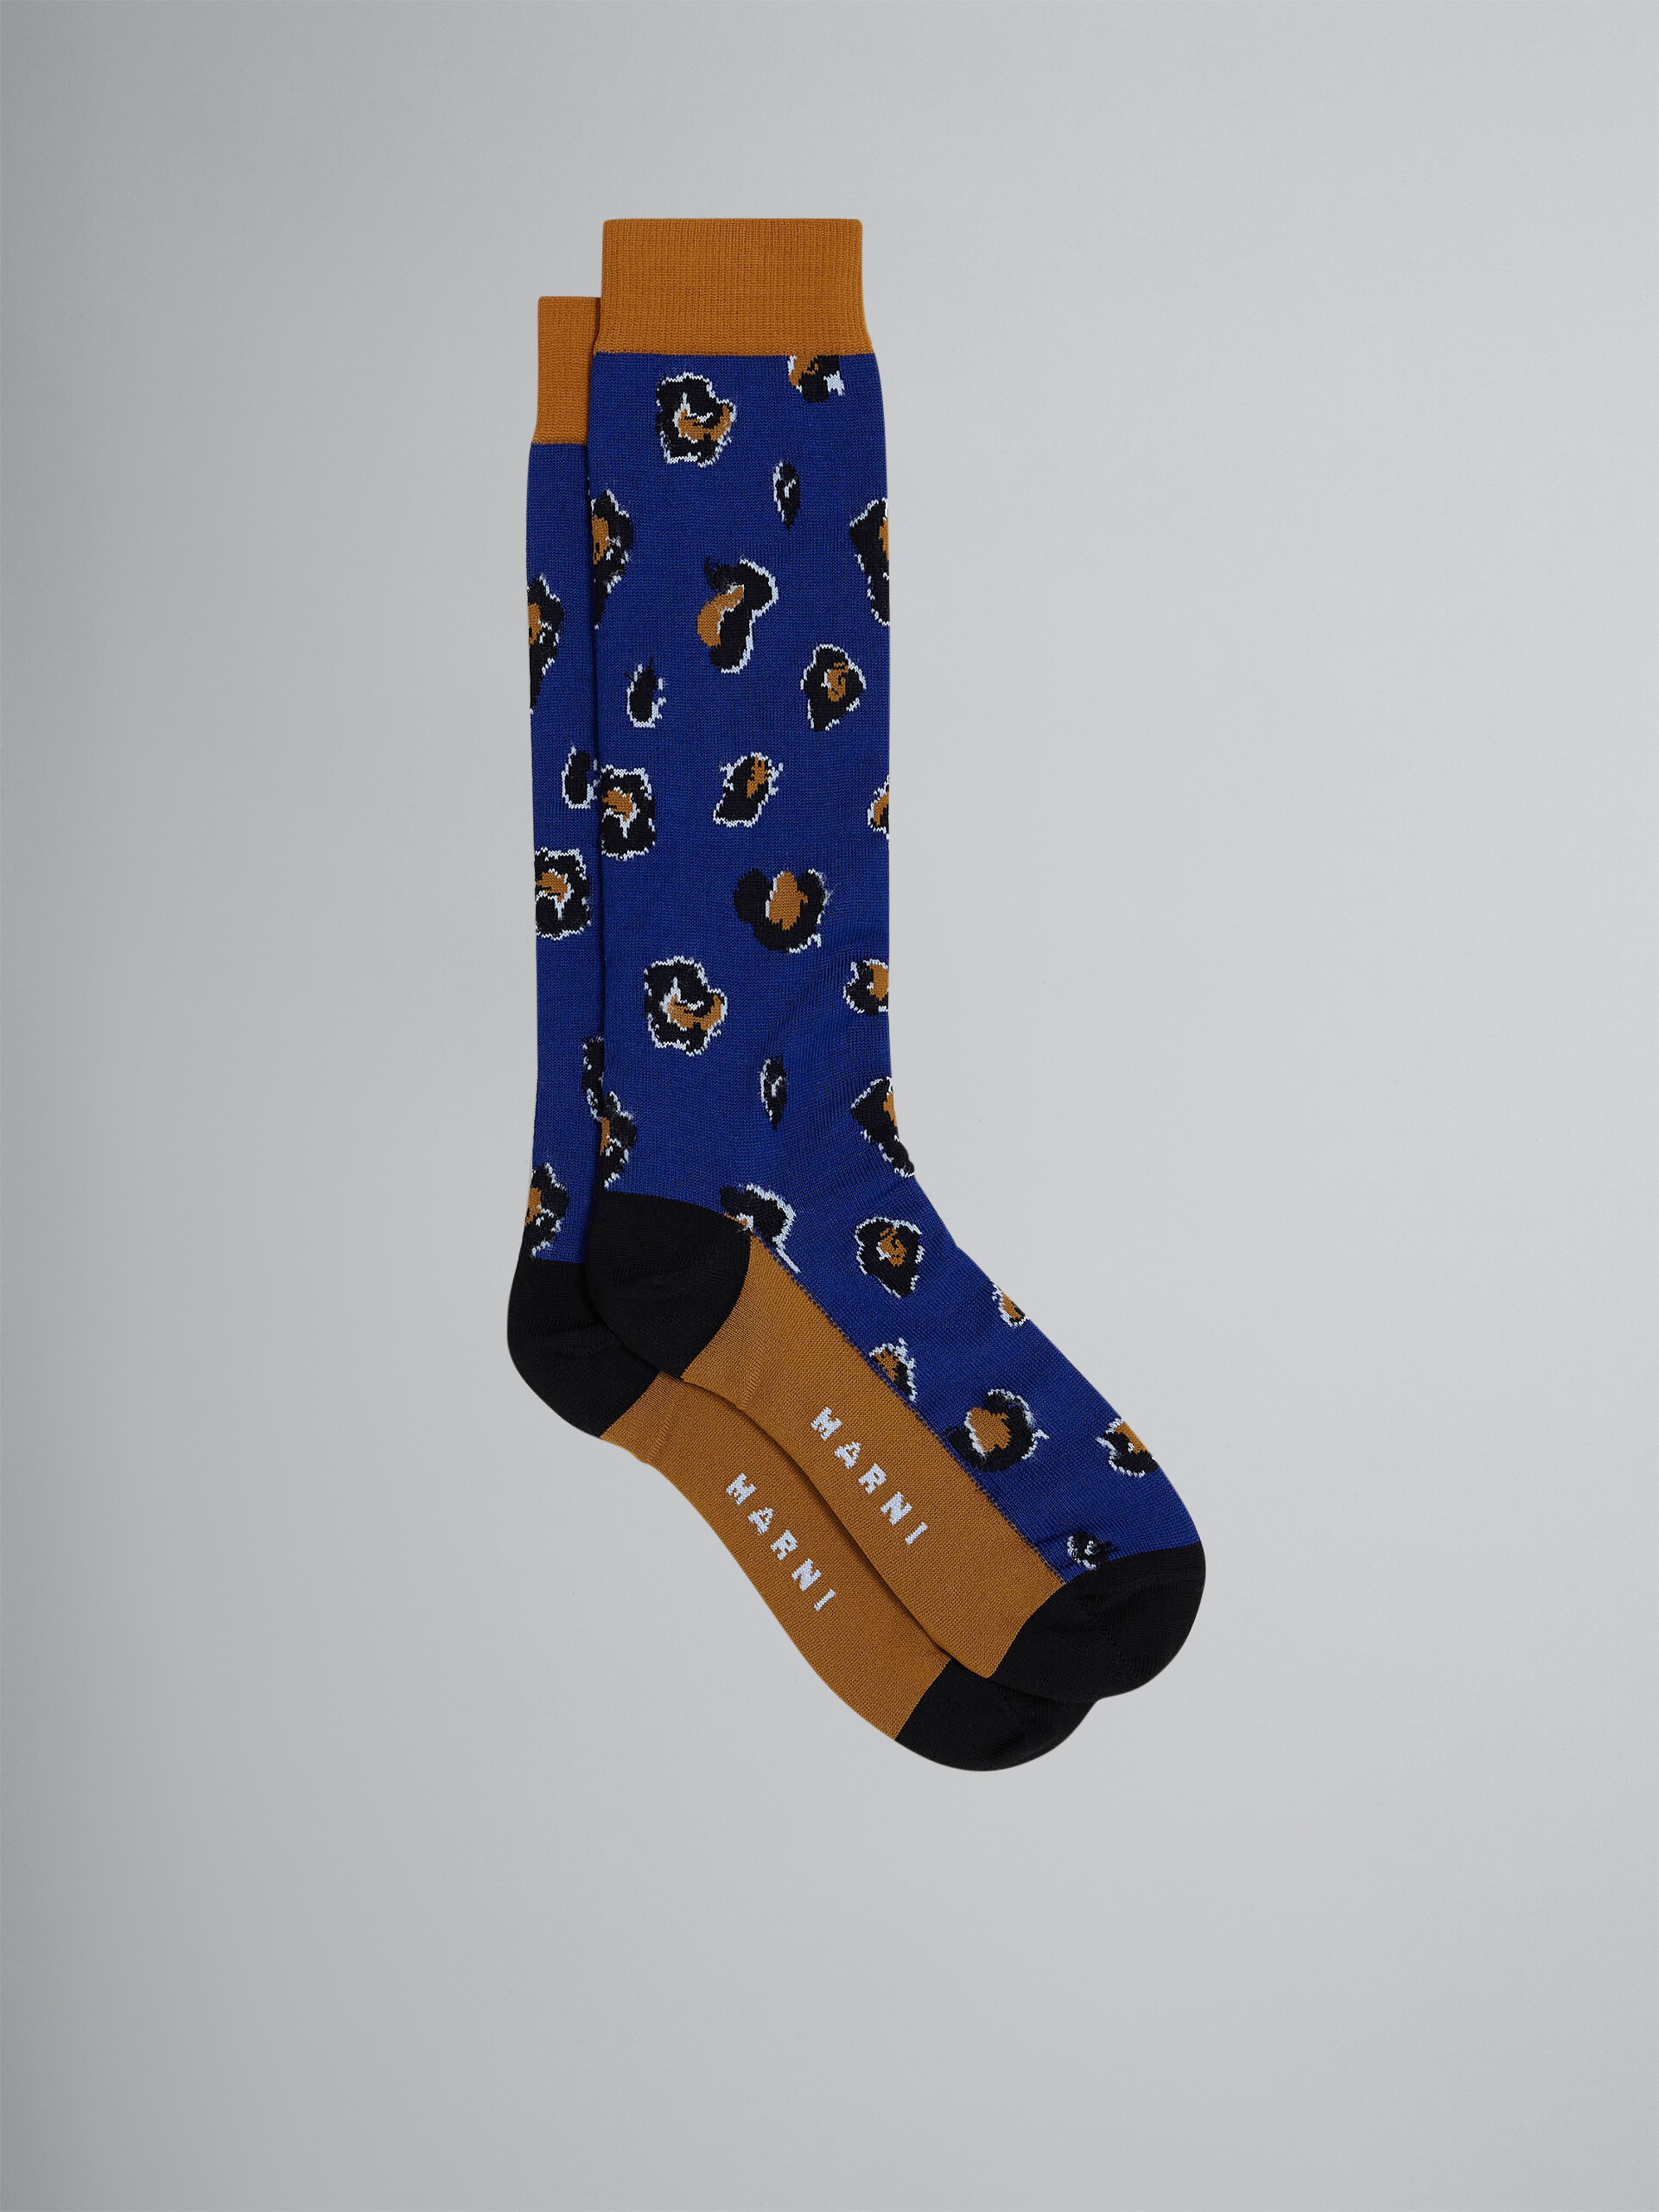 Blue Feline Twist cotton and nylon socks - Socks - Image 1